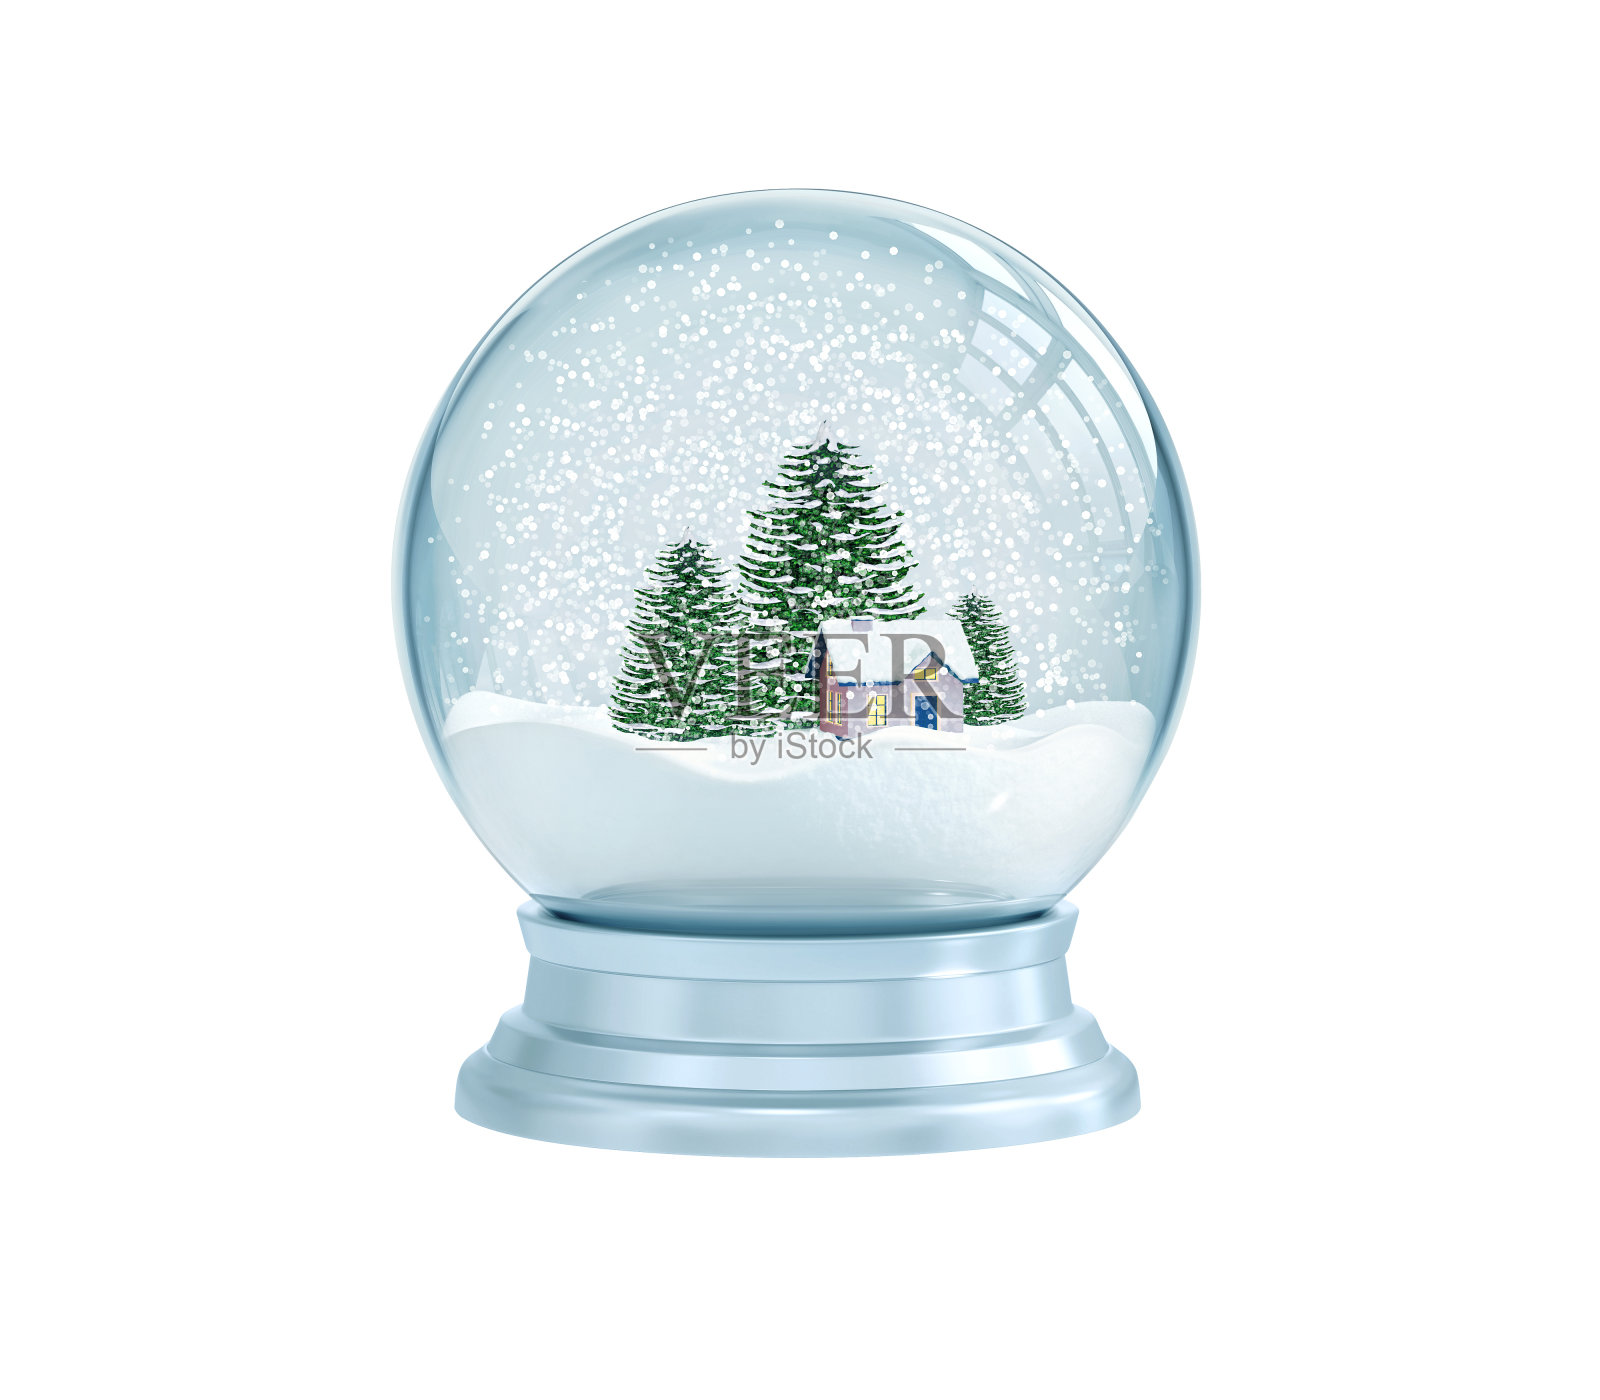 有房子和松树的雪花玻璃球插画图片素材